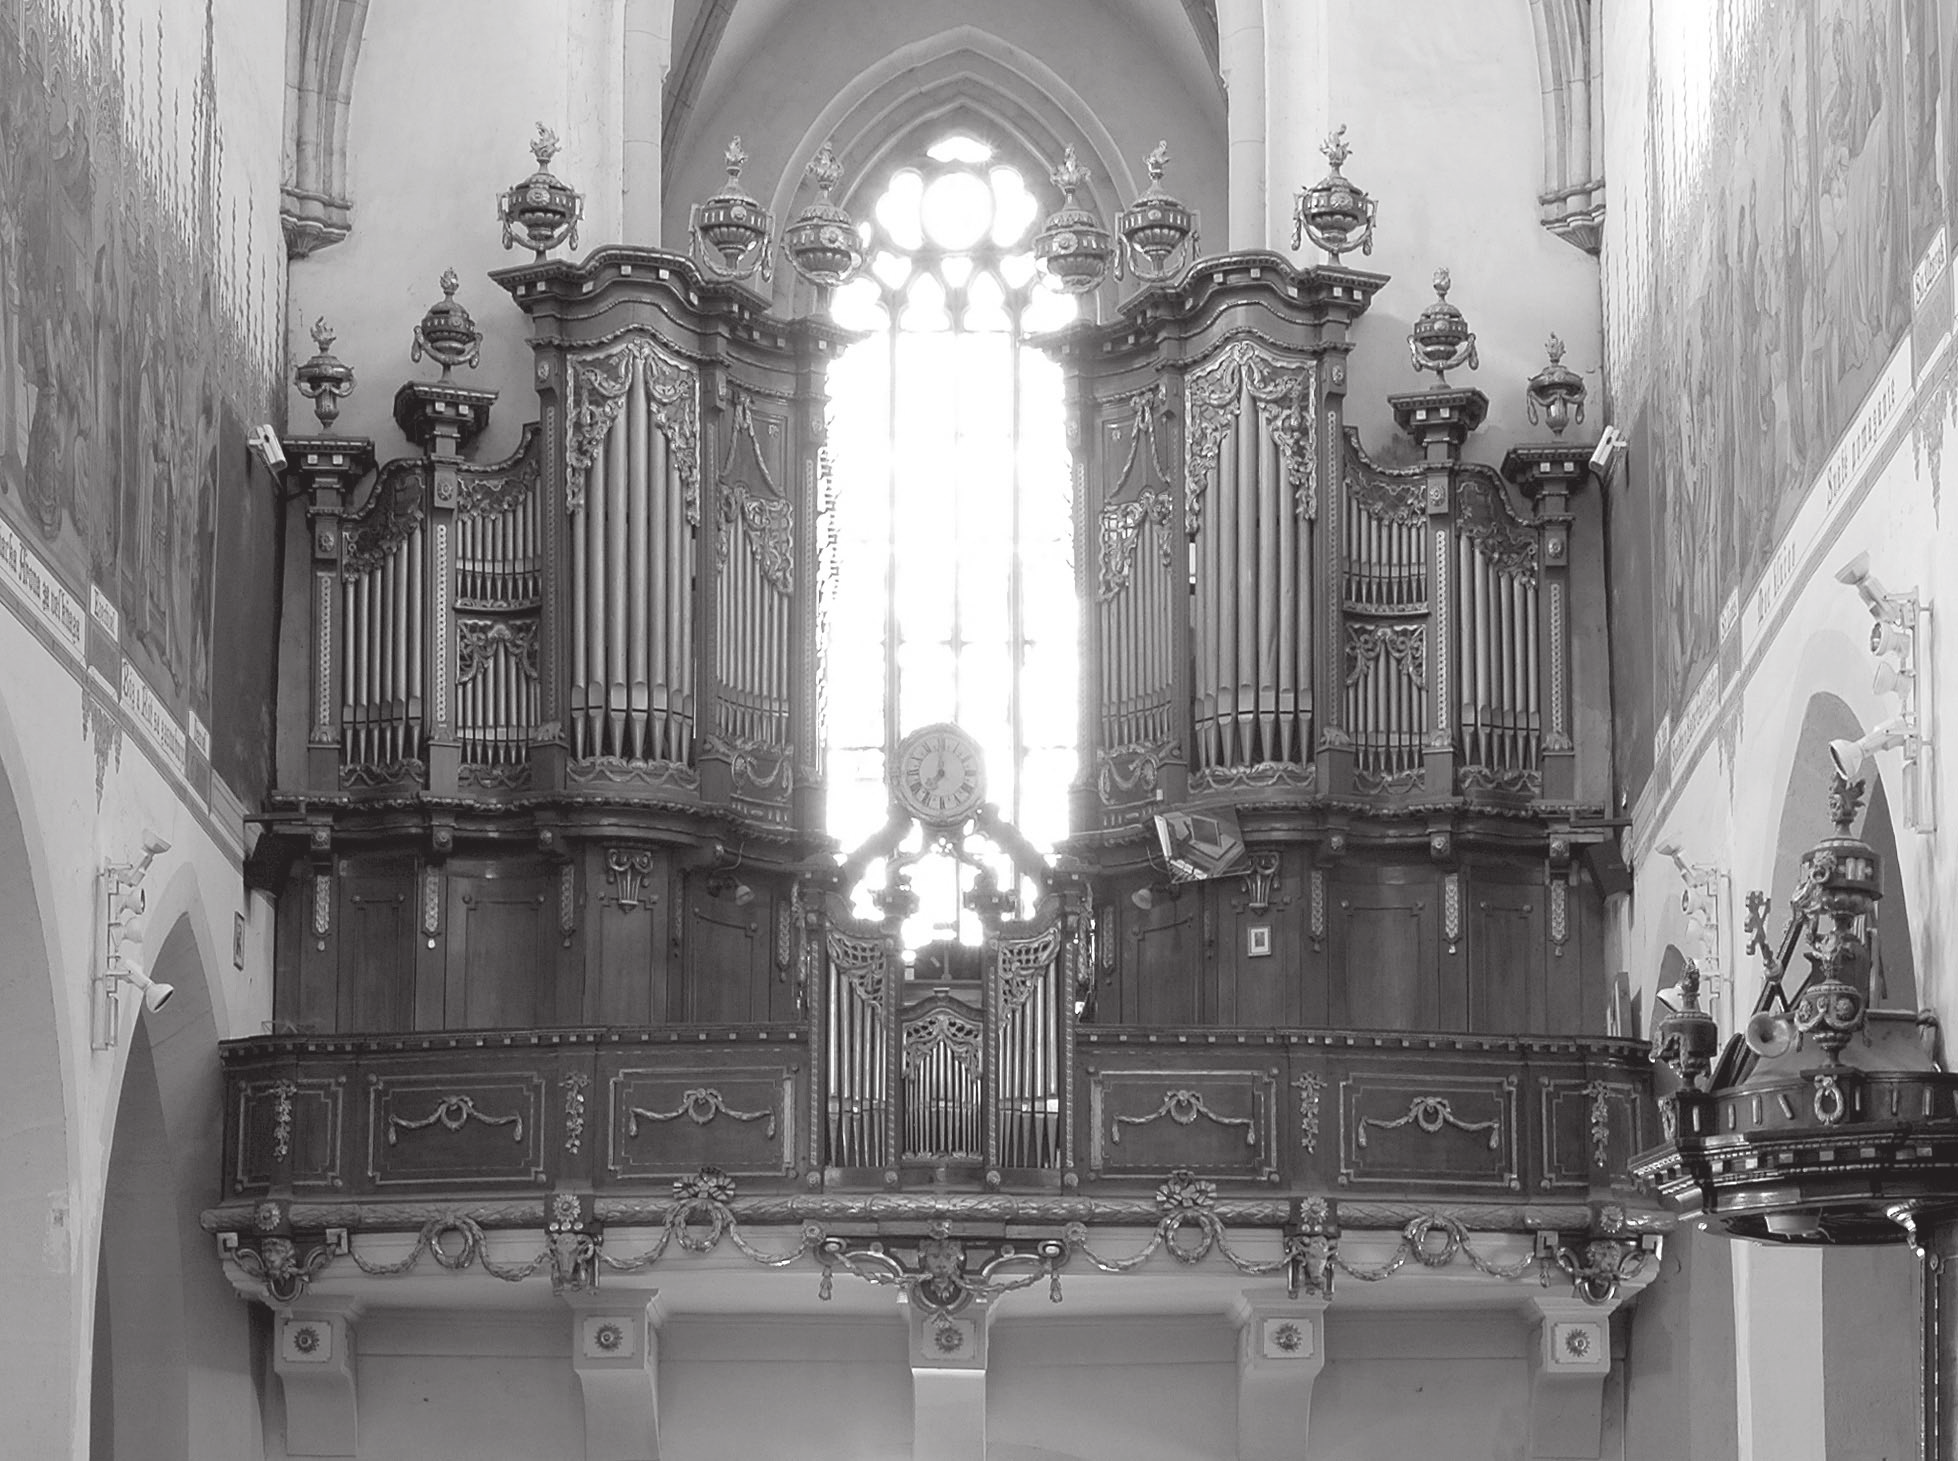 Ján Valovič Reštaurovanie najstaršieho trnavského organa Organ Walentina Arnolda z roku 1783 v Bazilike sv. Mikuláša v Trnave Organ zohrával už od 15. storočia na Slovensku významnú kultúrnu úlohu.